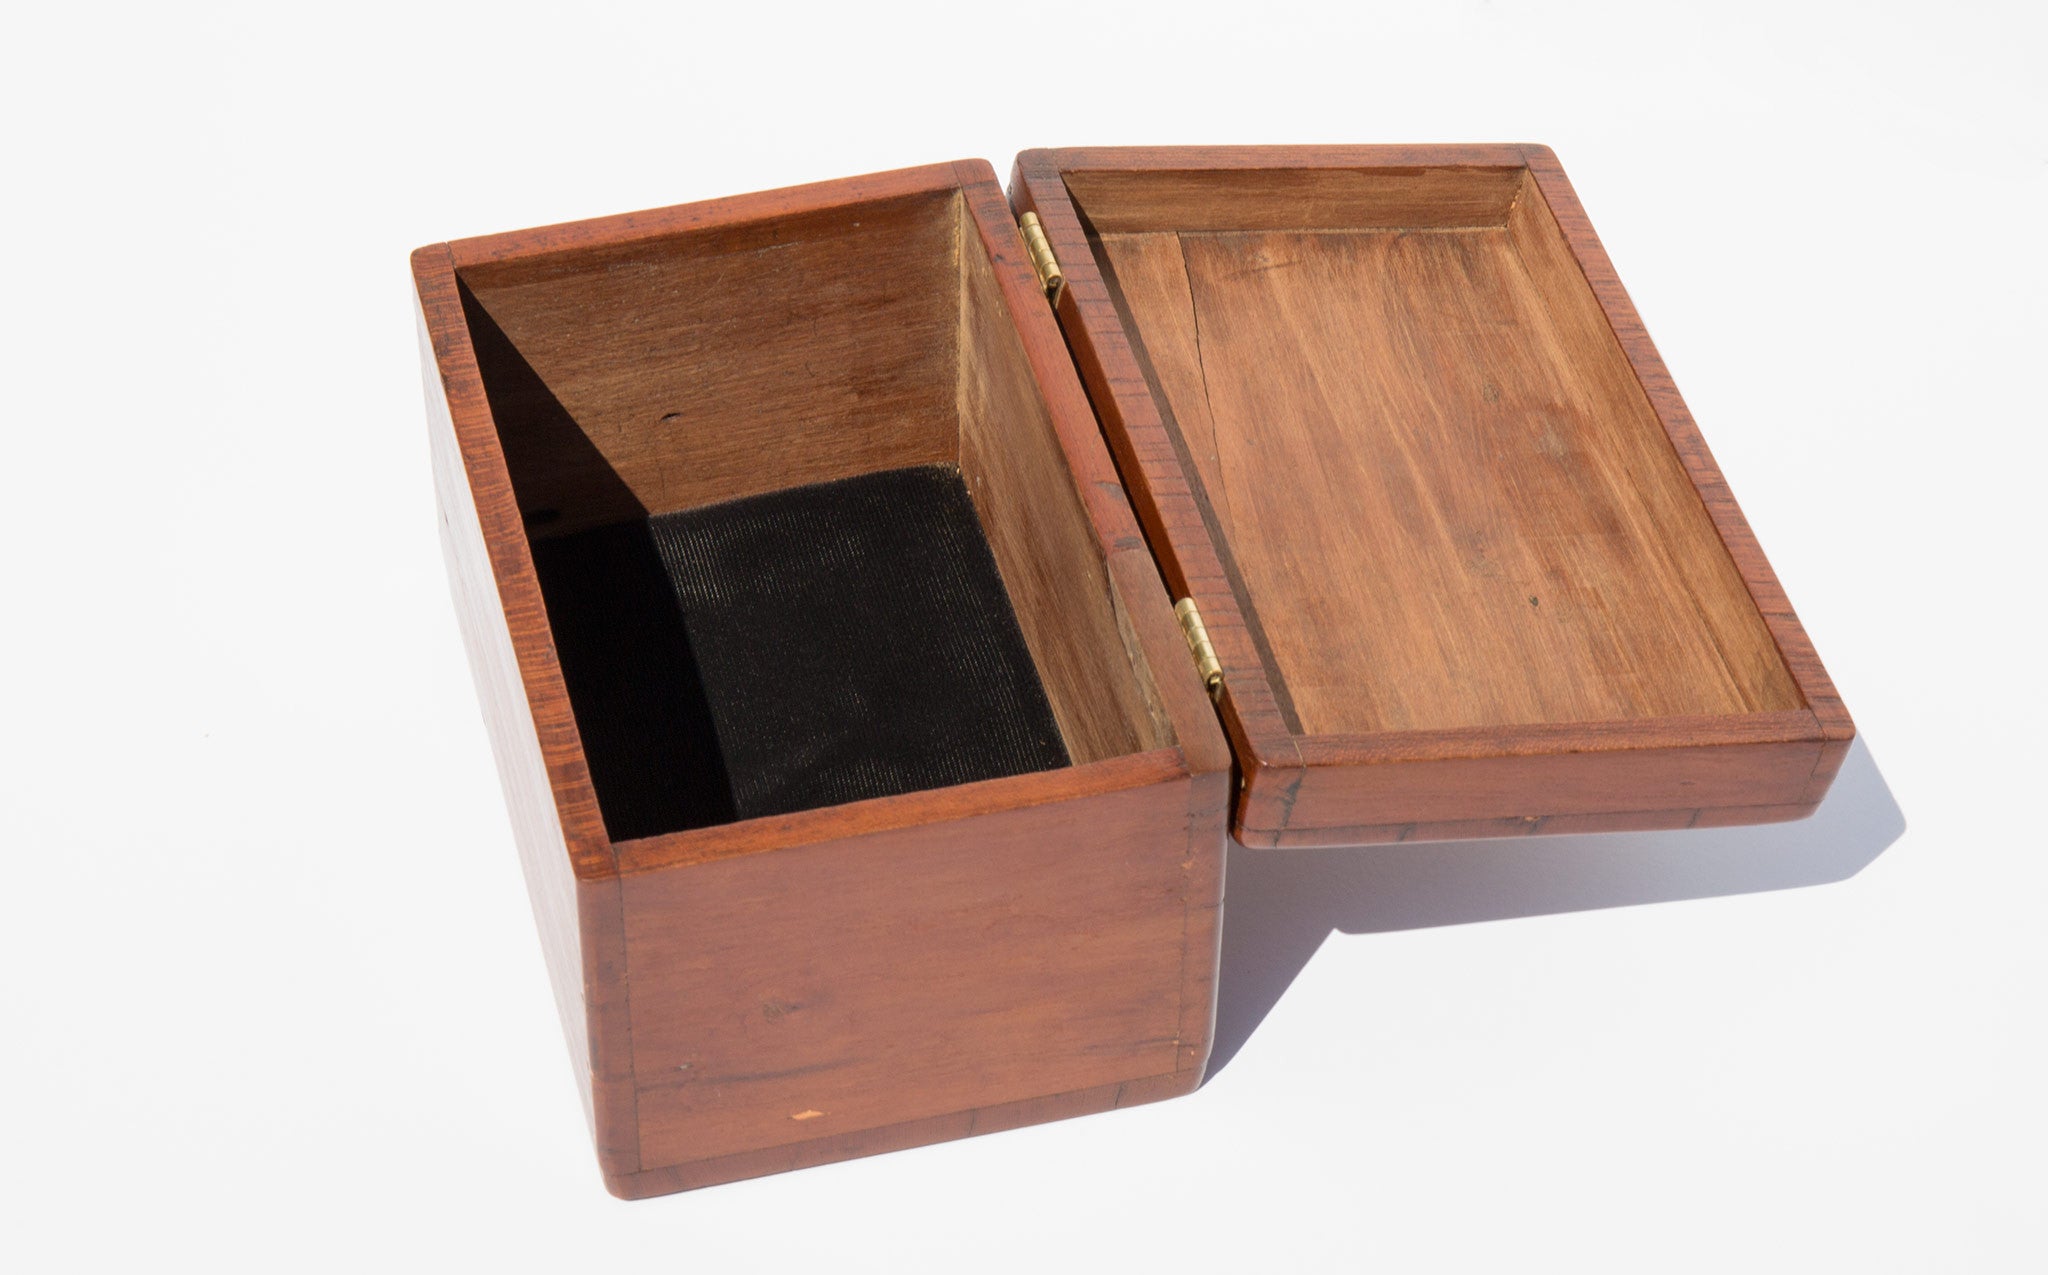 Hand Restored 1930's Cherry Wood Box